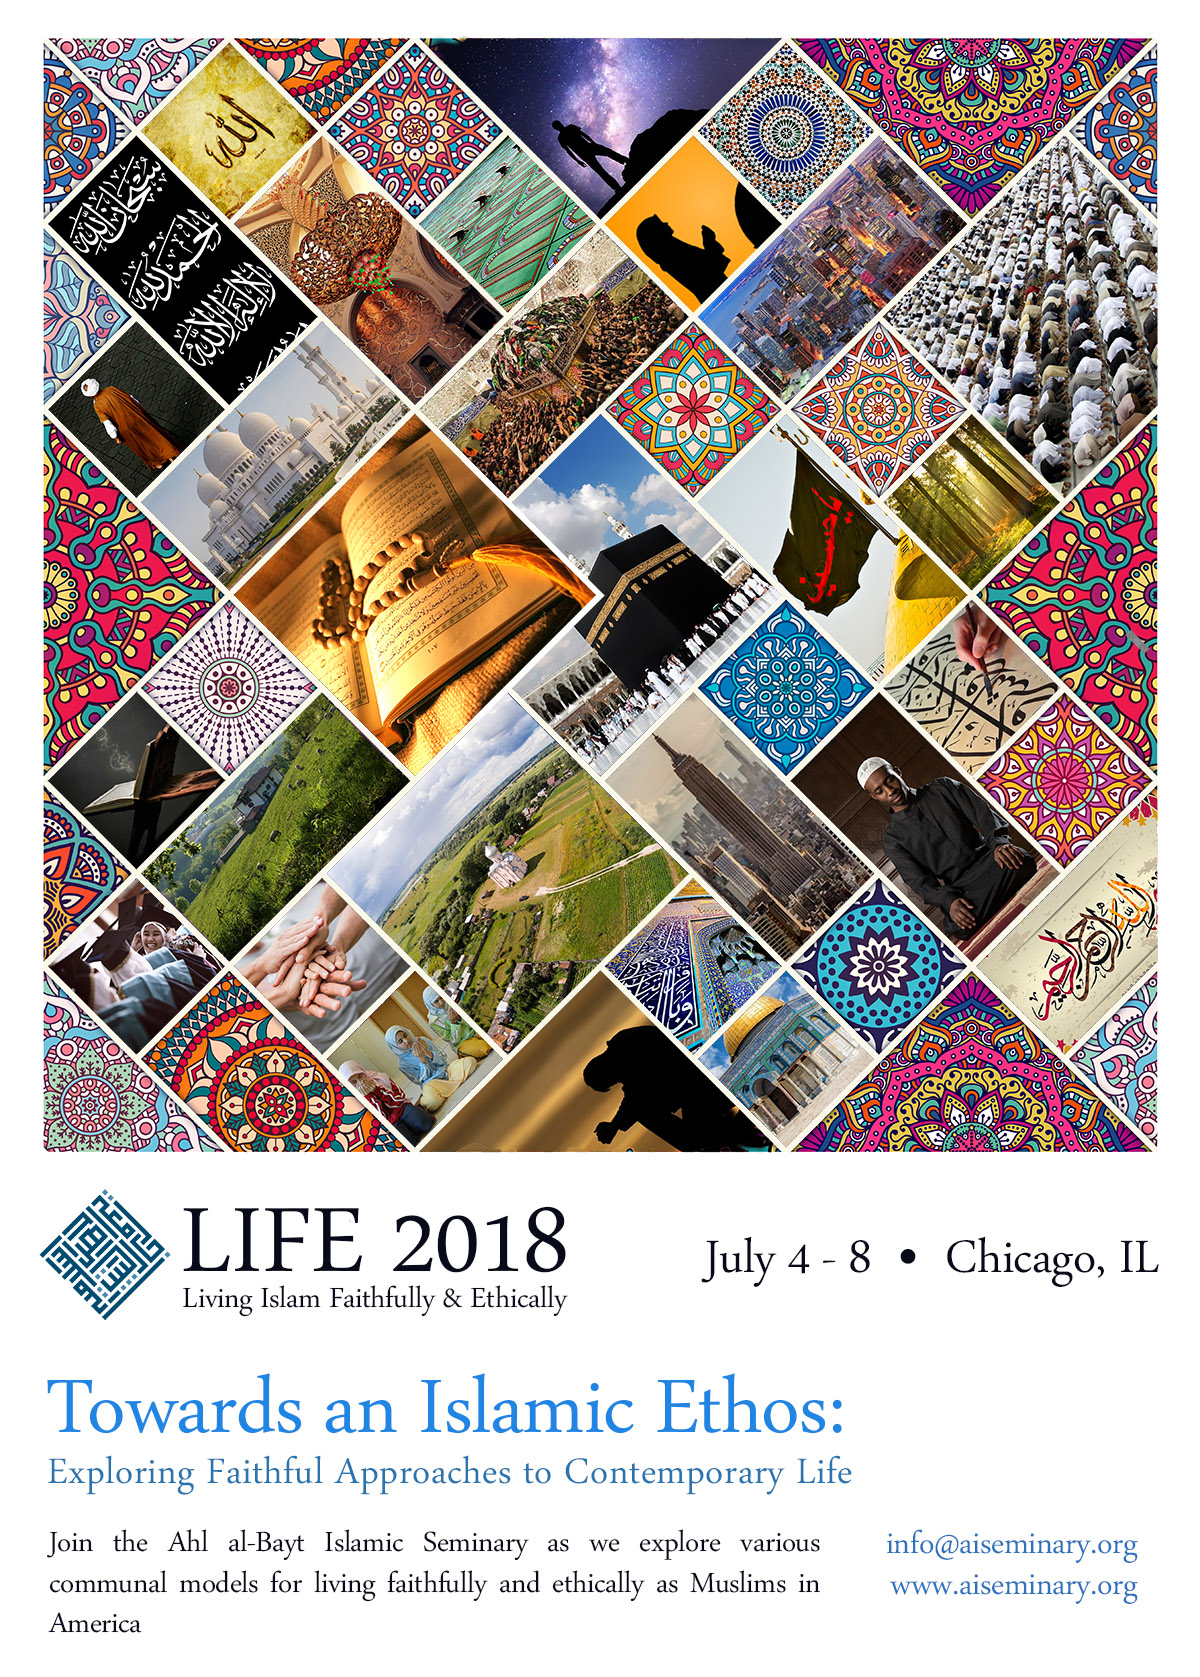 LIFE 2018 – TOWARDS AN ISLAMIC ETHOS